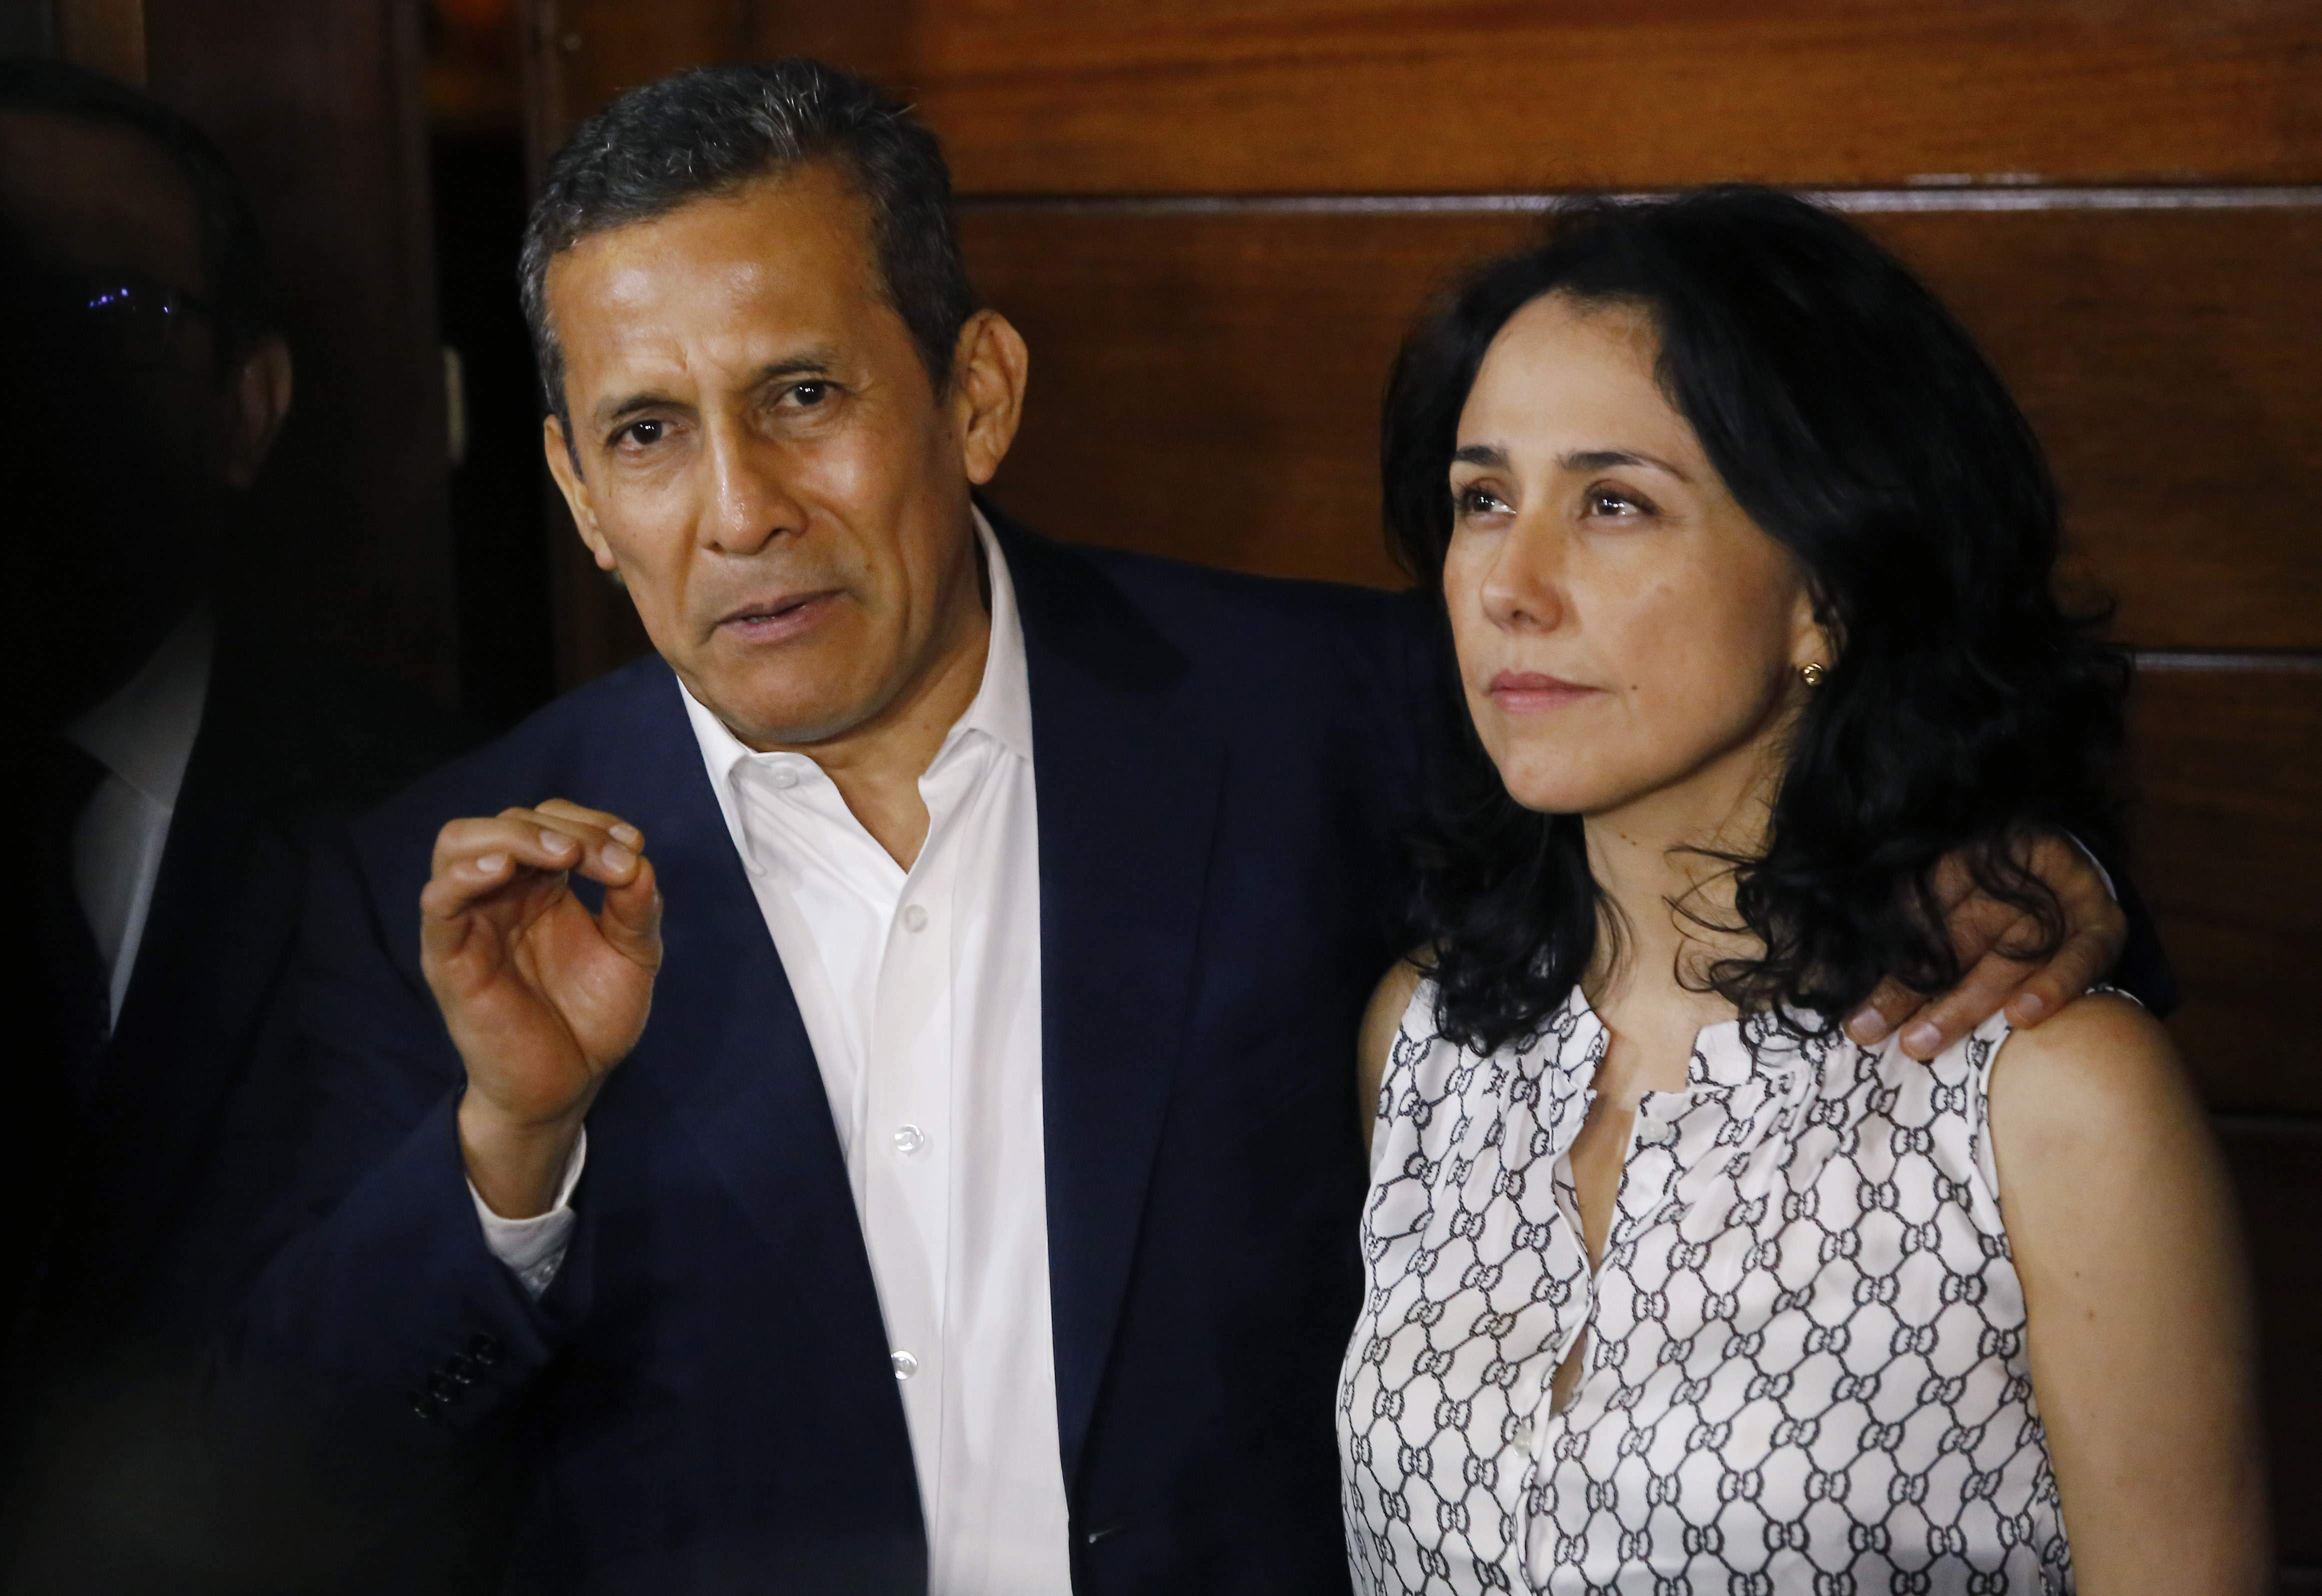 ARCHIVO - El expresidente de Perú, Ollanta Humala, acompañado por su esposa Nadine Heredia, habla con los periodistas en la entrada de su casa luego de ser liberados de prisión en Lima, Perú, el 30 de abril de 2018. (AP Foto/Joel Alonzo, Archivo)